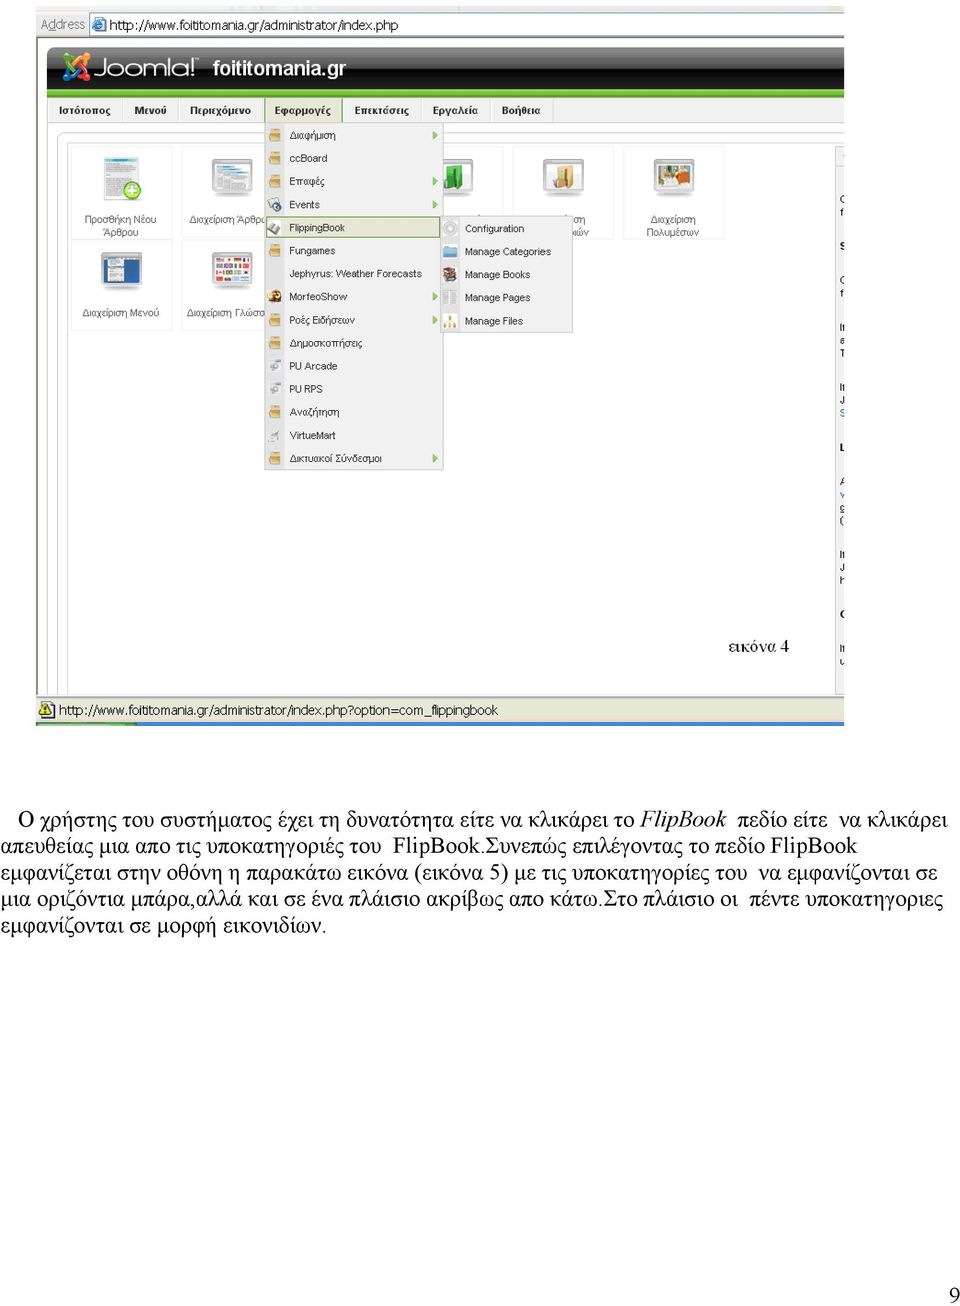 Συνεπώς επιλέγοντας το πεδίο FlipBook εμφανίζεται στην οθόνη η παρακάτω εικόνα (εικόνα 5) με τις